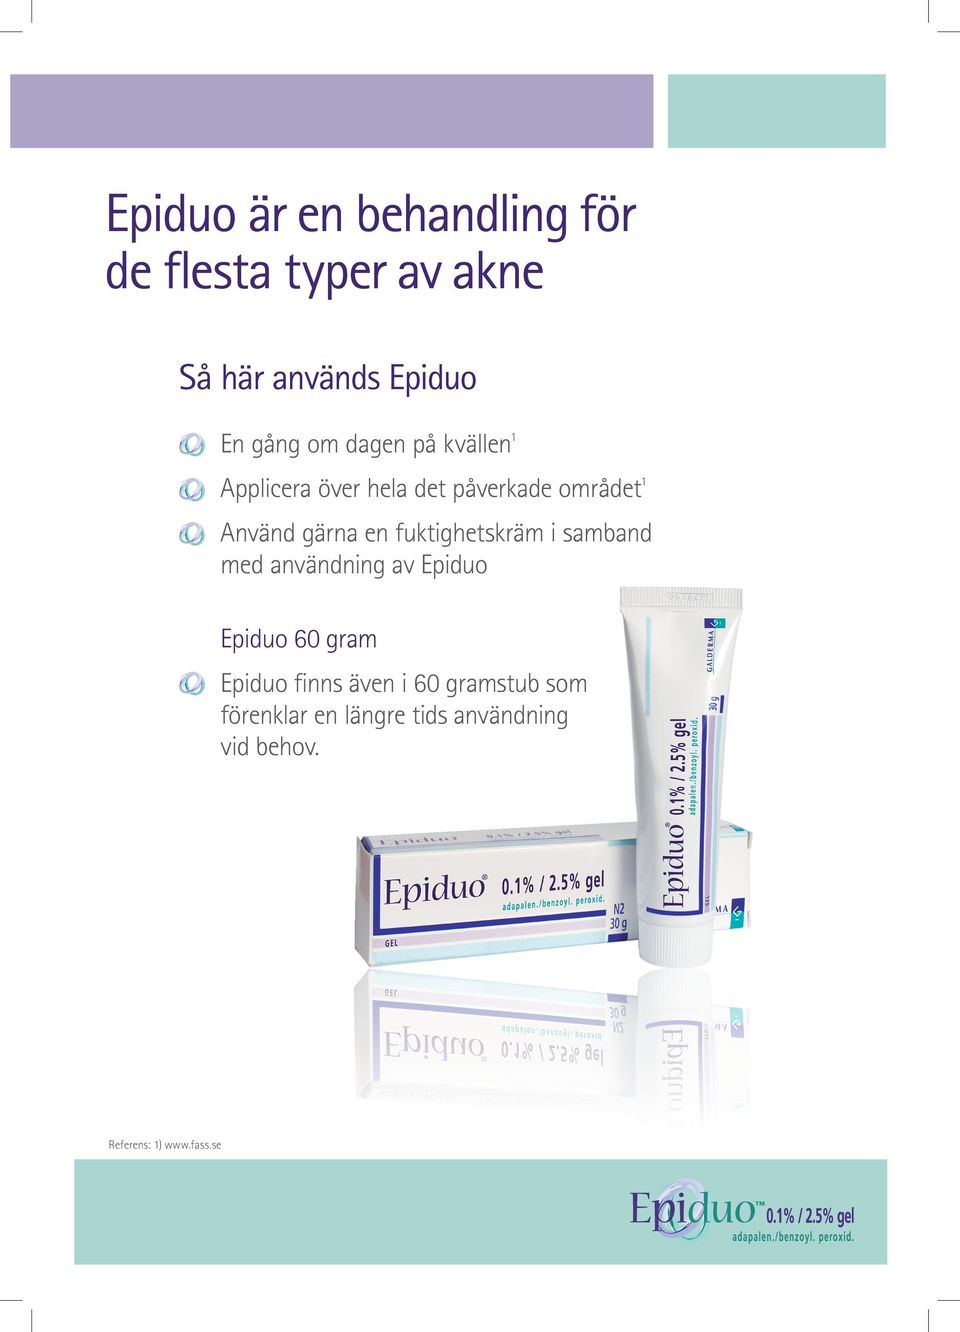 fuktighetskräm i samband med användning av Epiduo Epiduo 60 gram Epiduo finns även